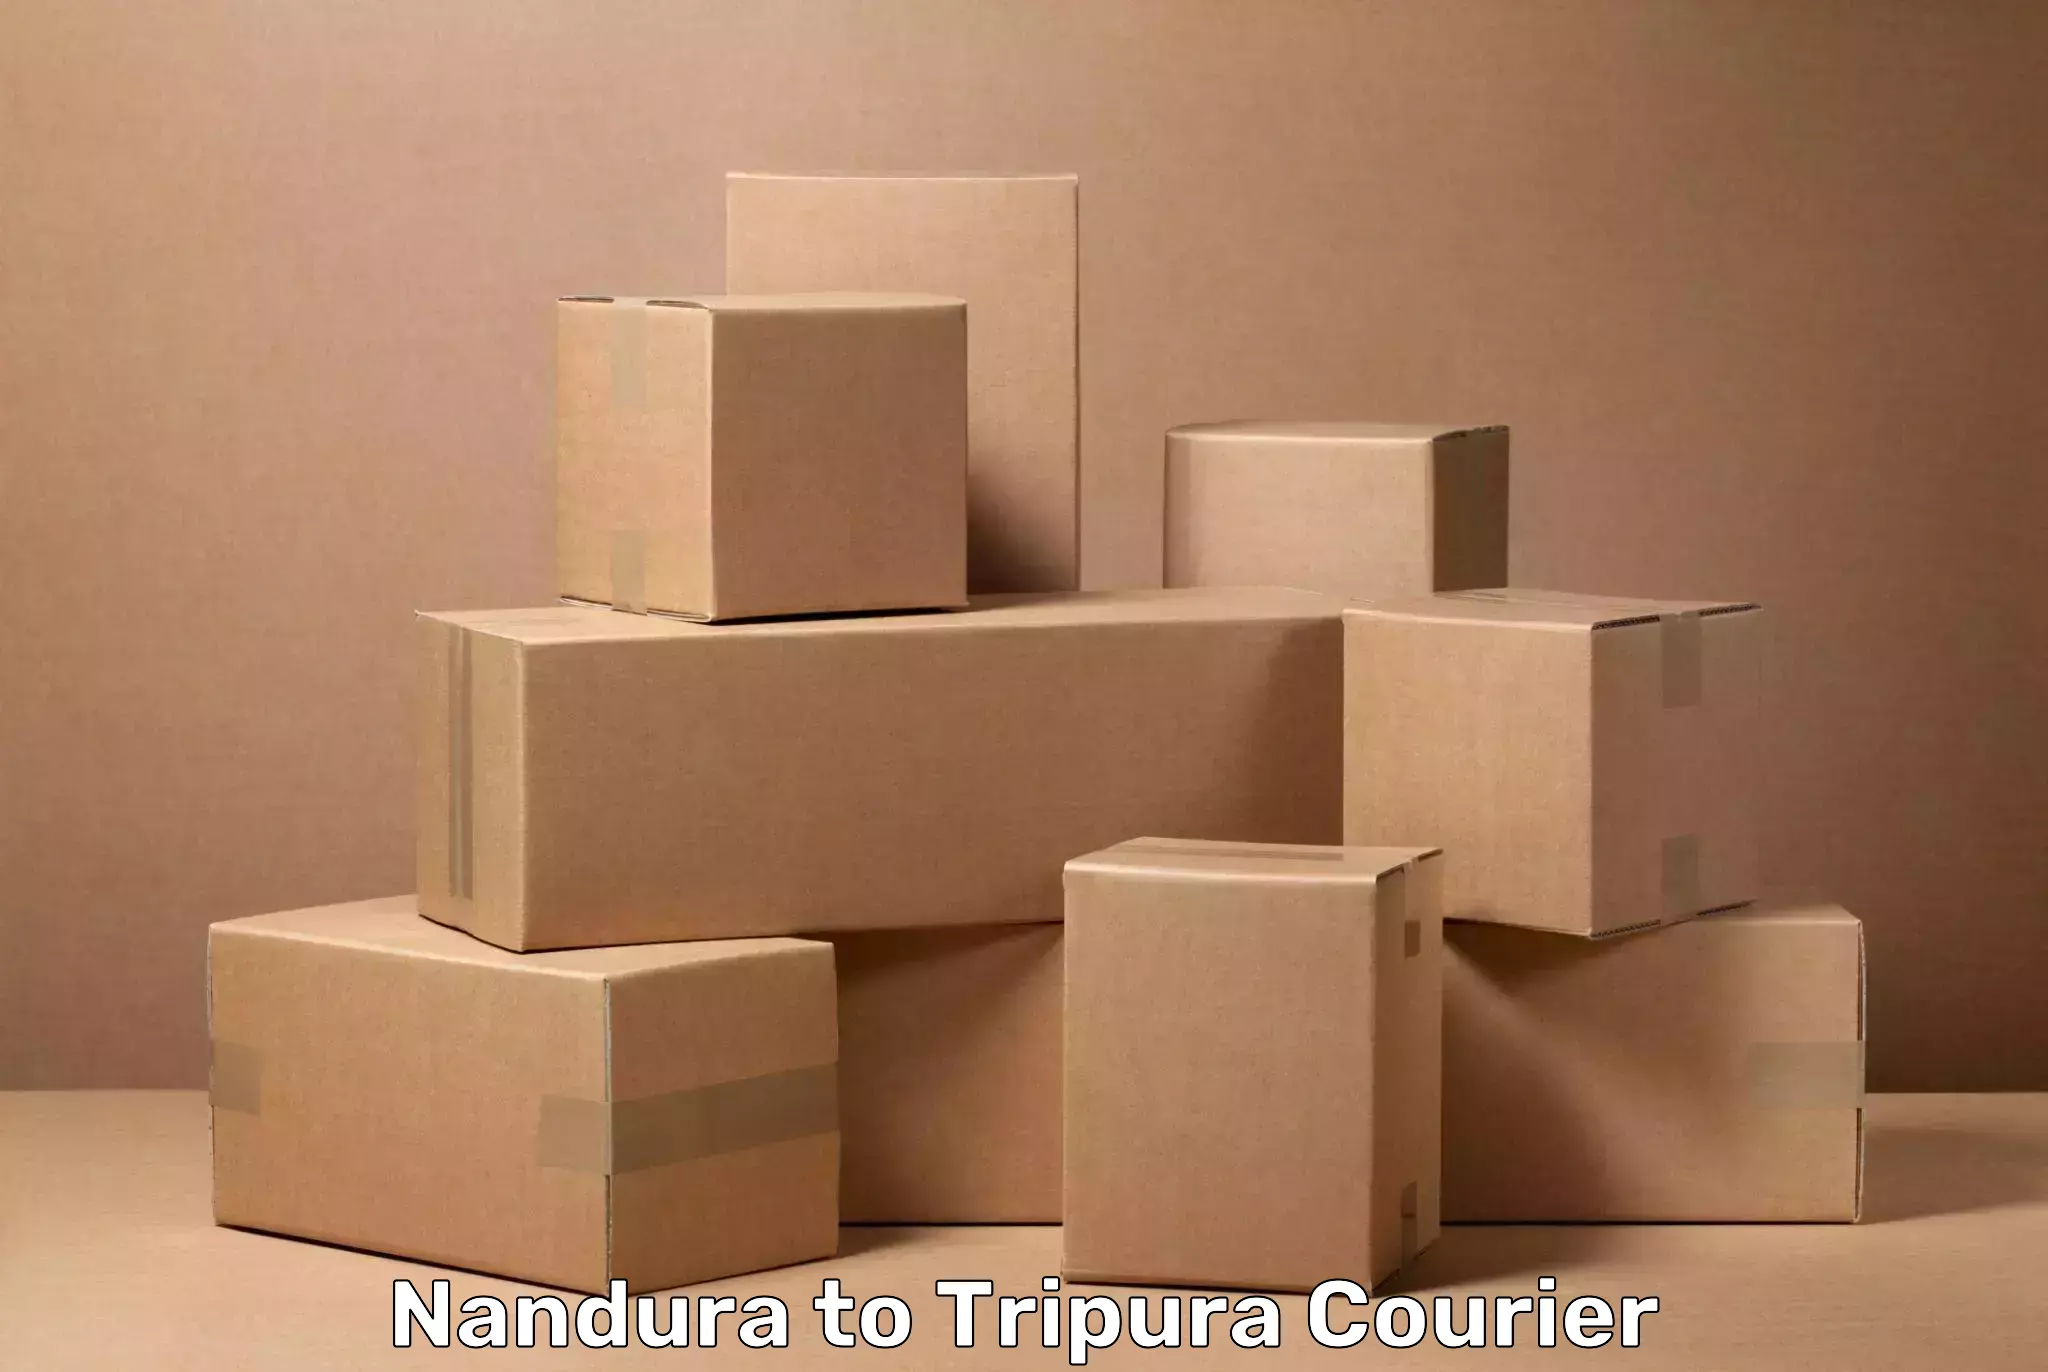 Luggage delivery estimate Nandura to Tripura